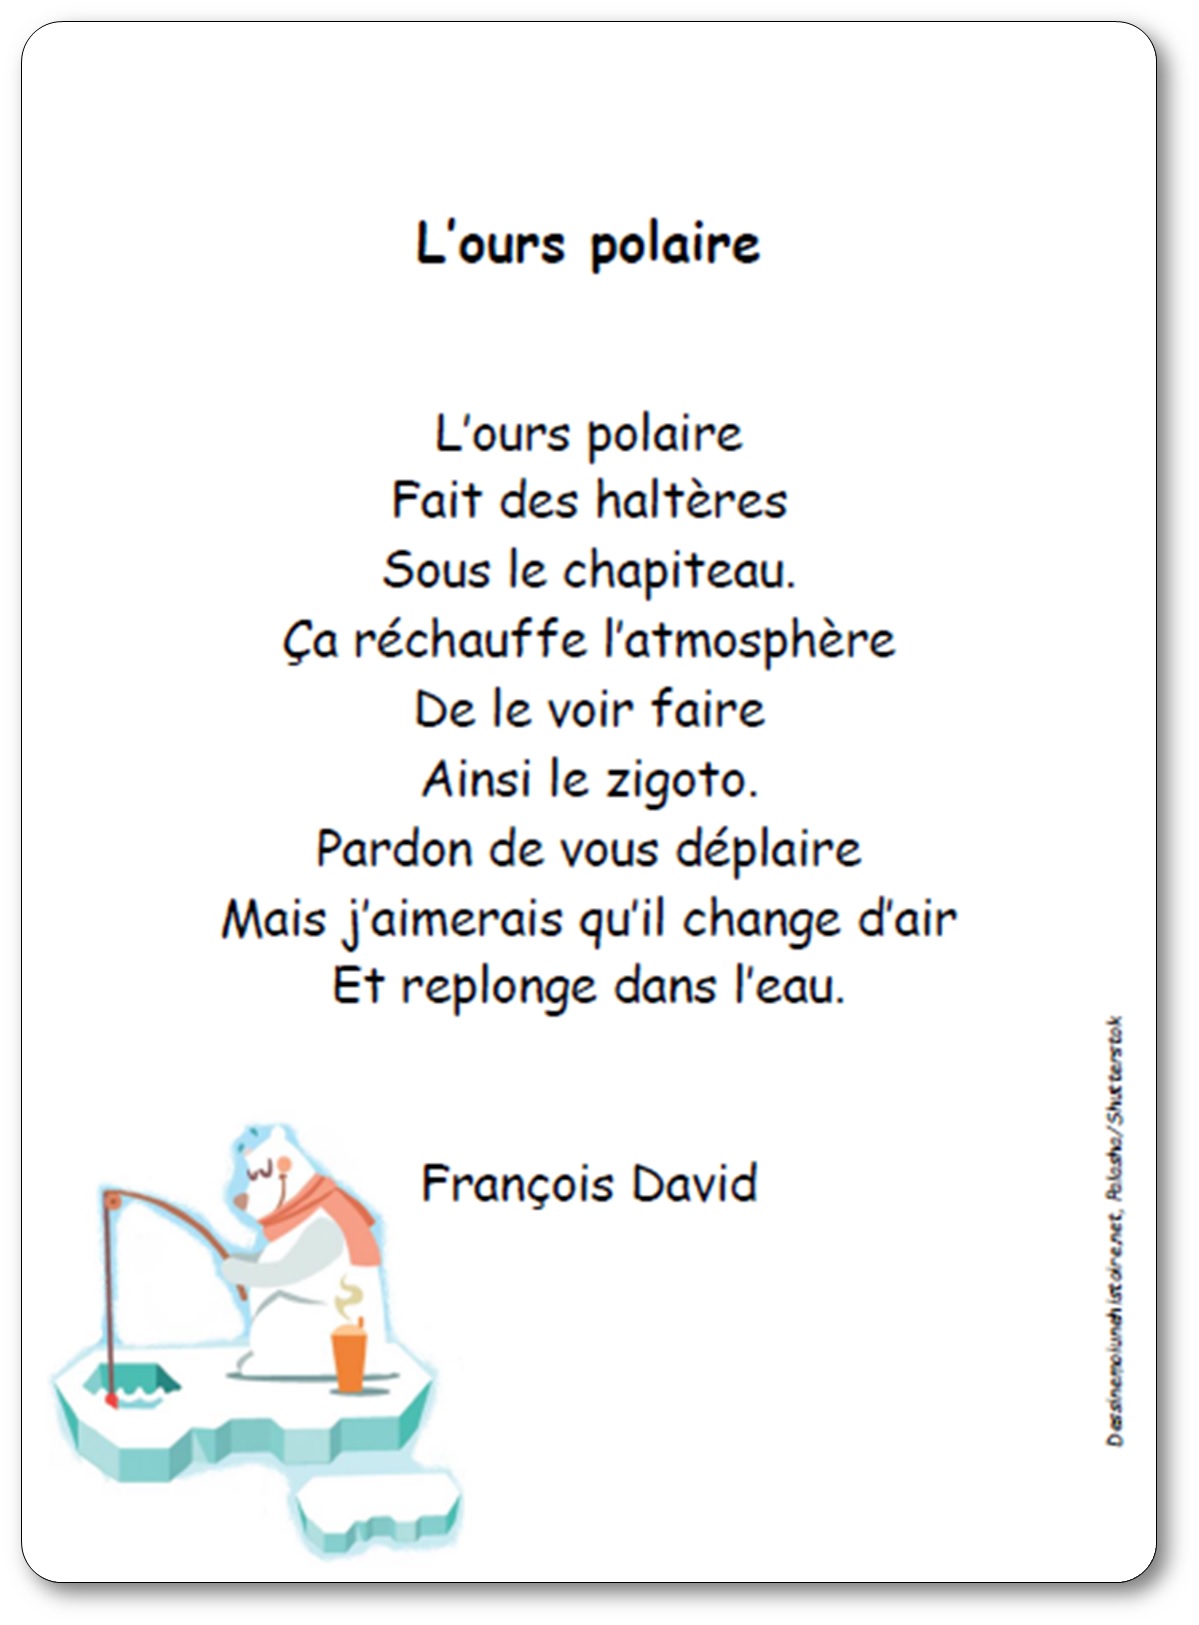 Poésie L'ours polaire de François David